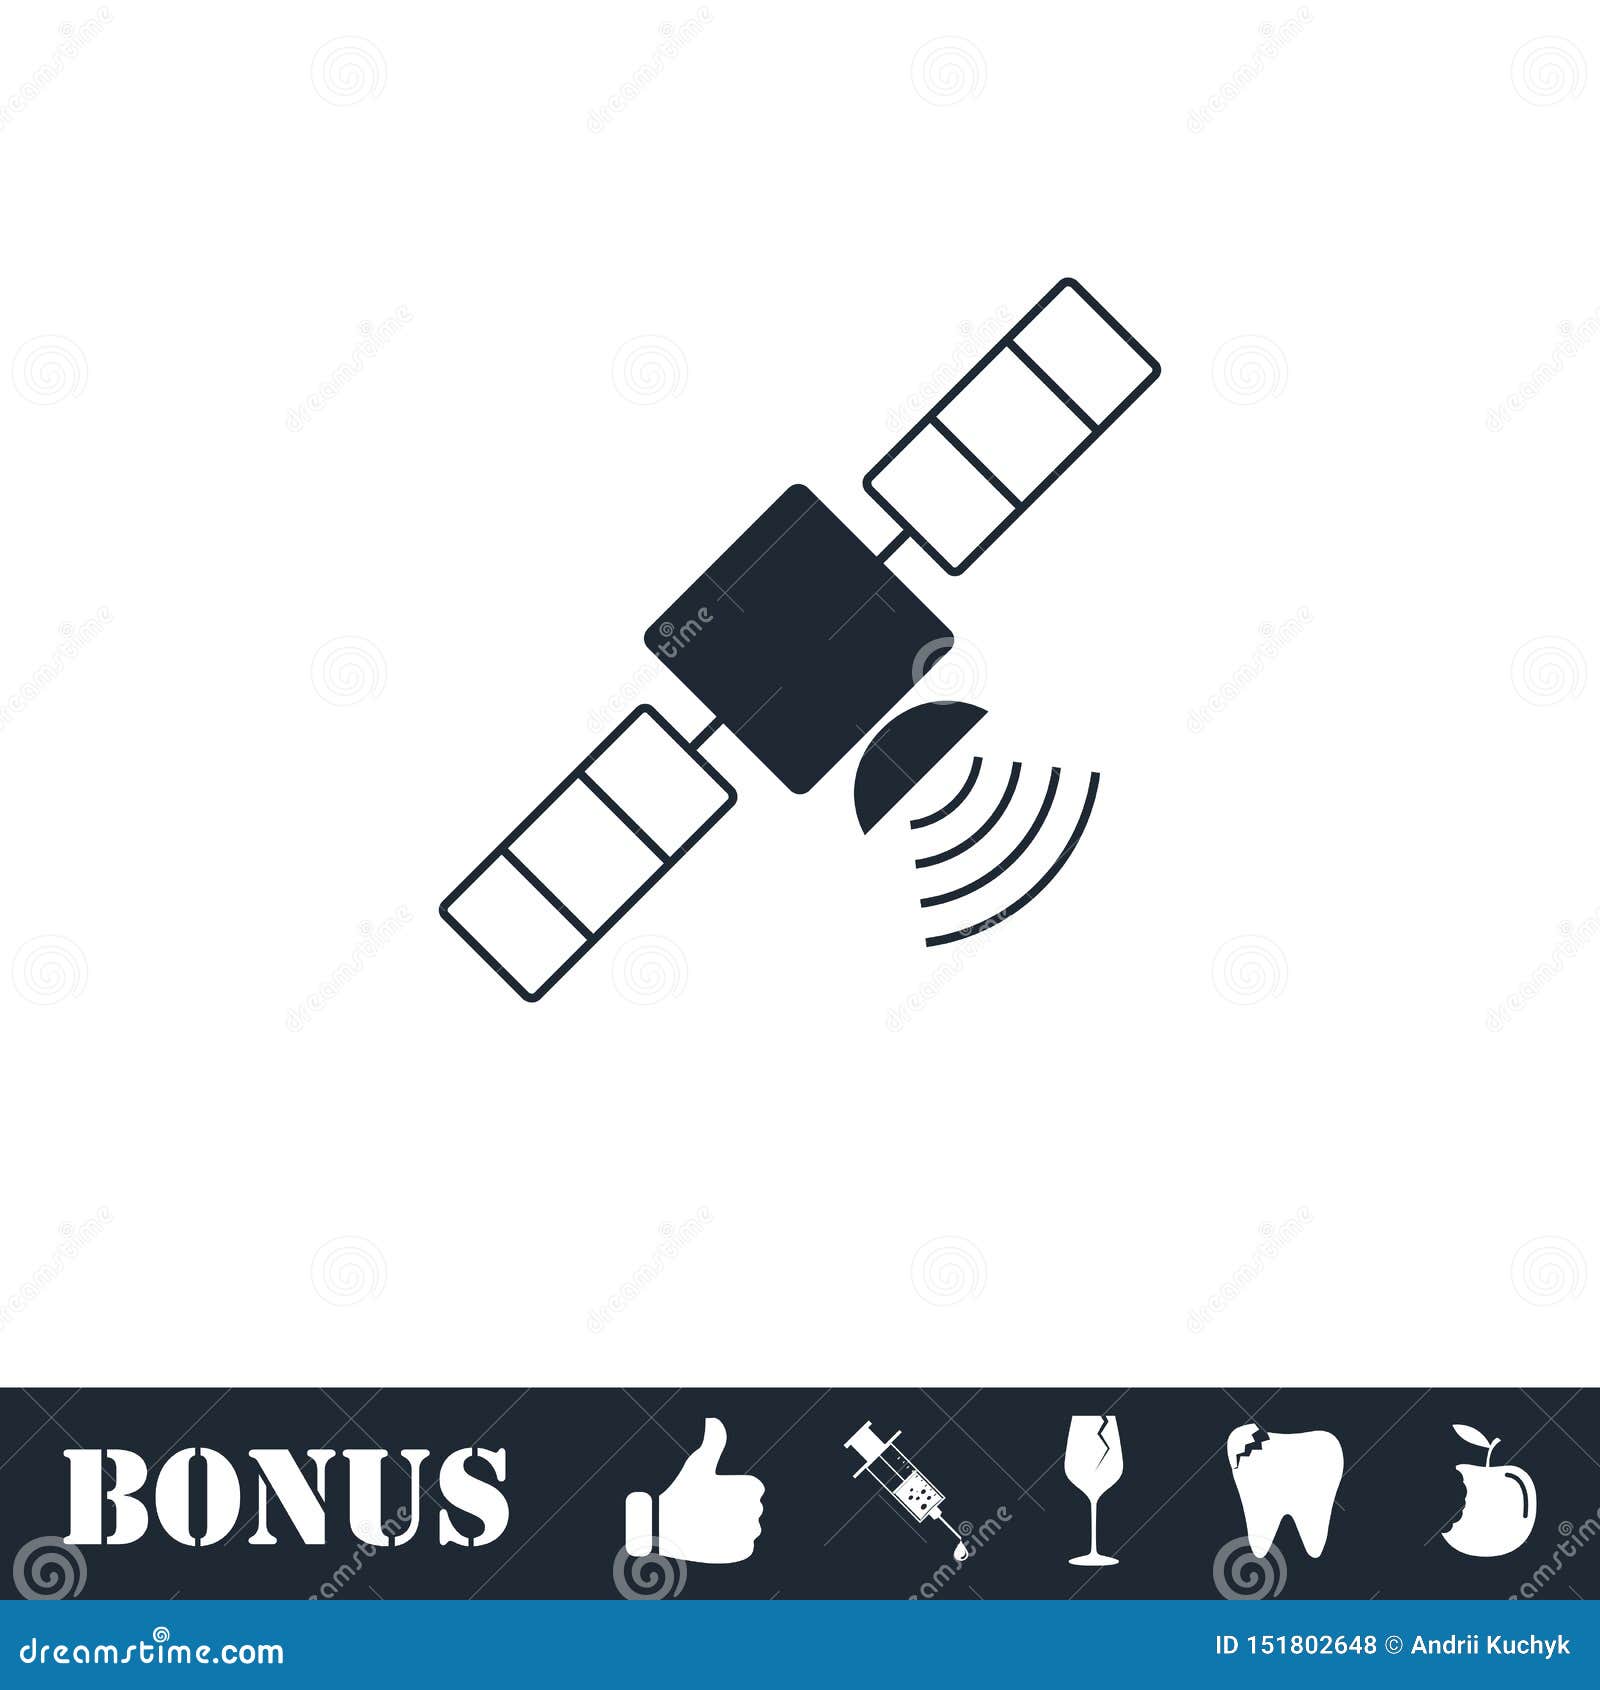 satelite icon flat